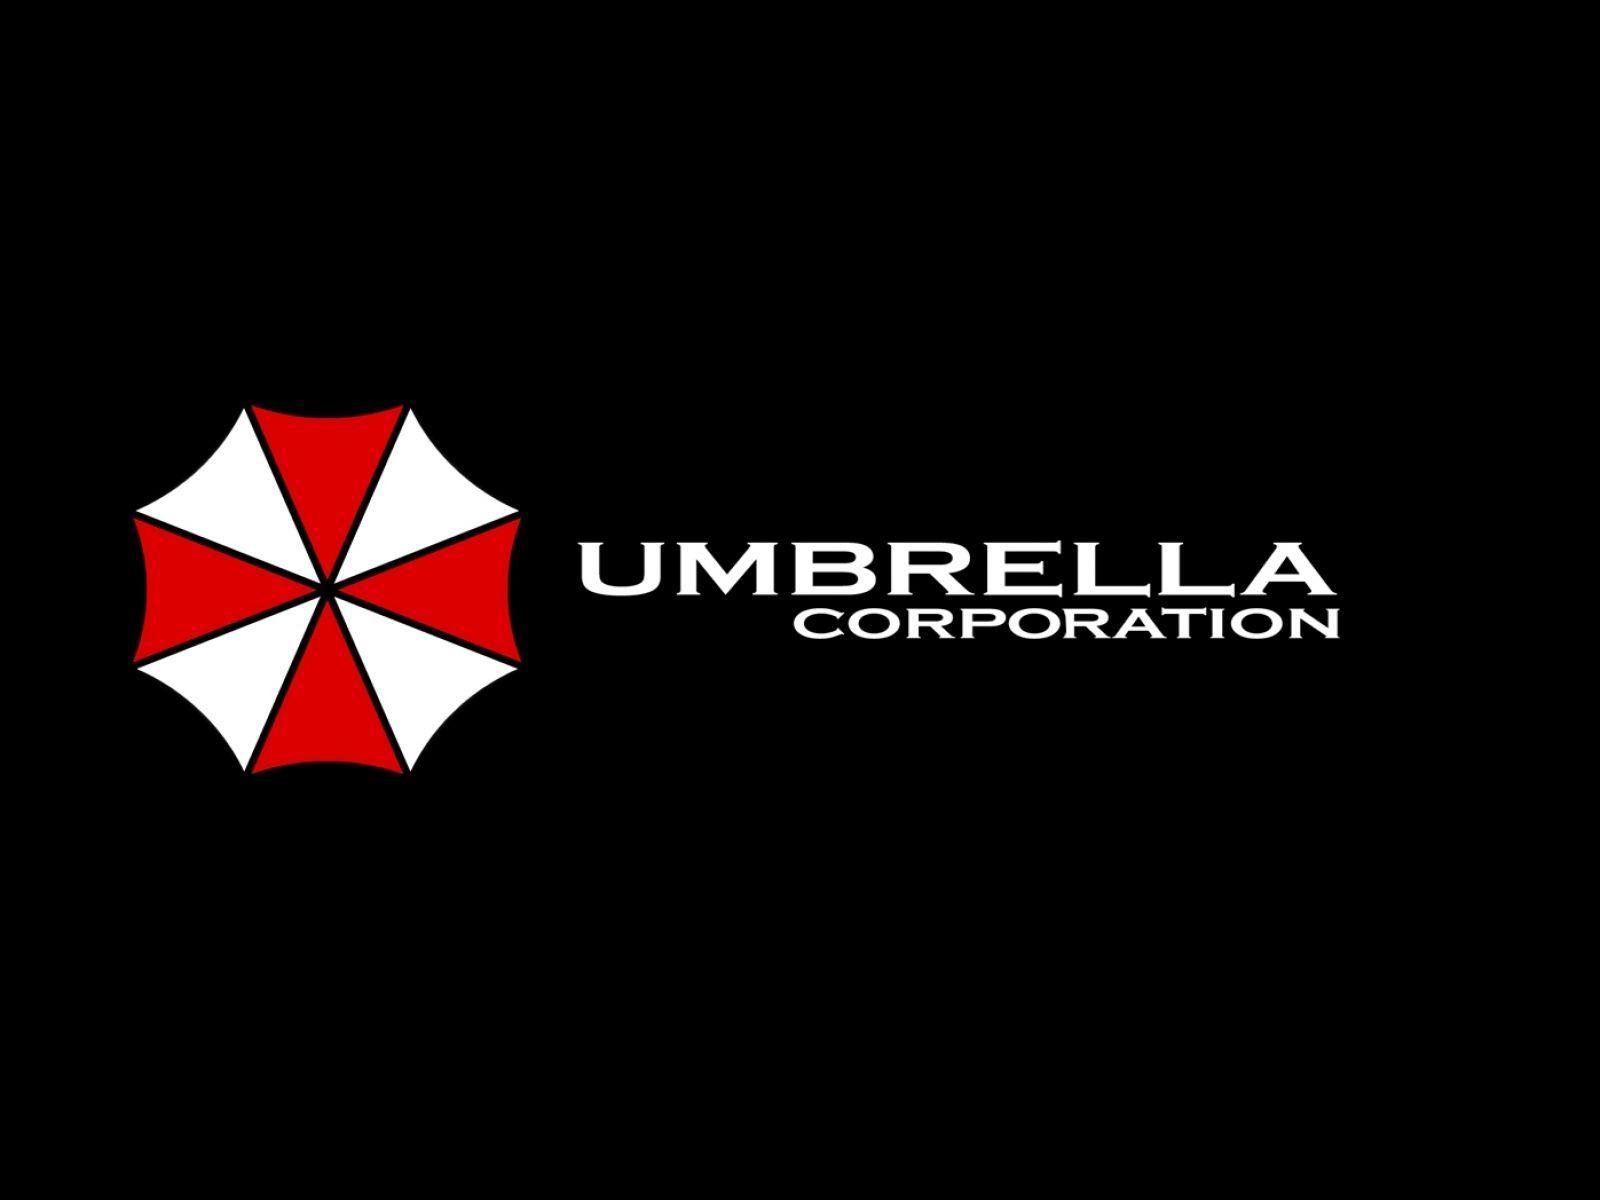 Umbrella Company Logo - umbrella corporation. company logos. Umbrella